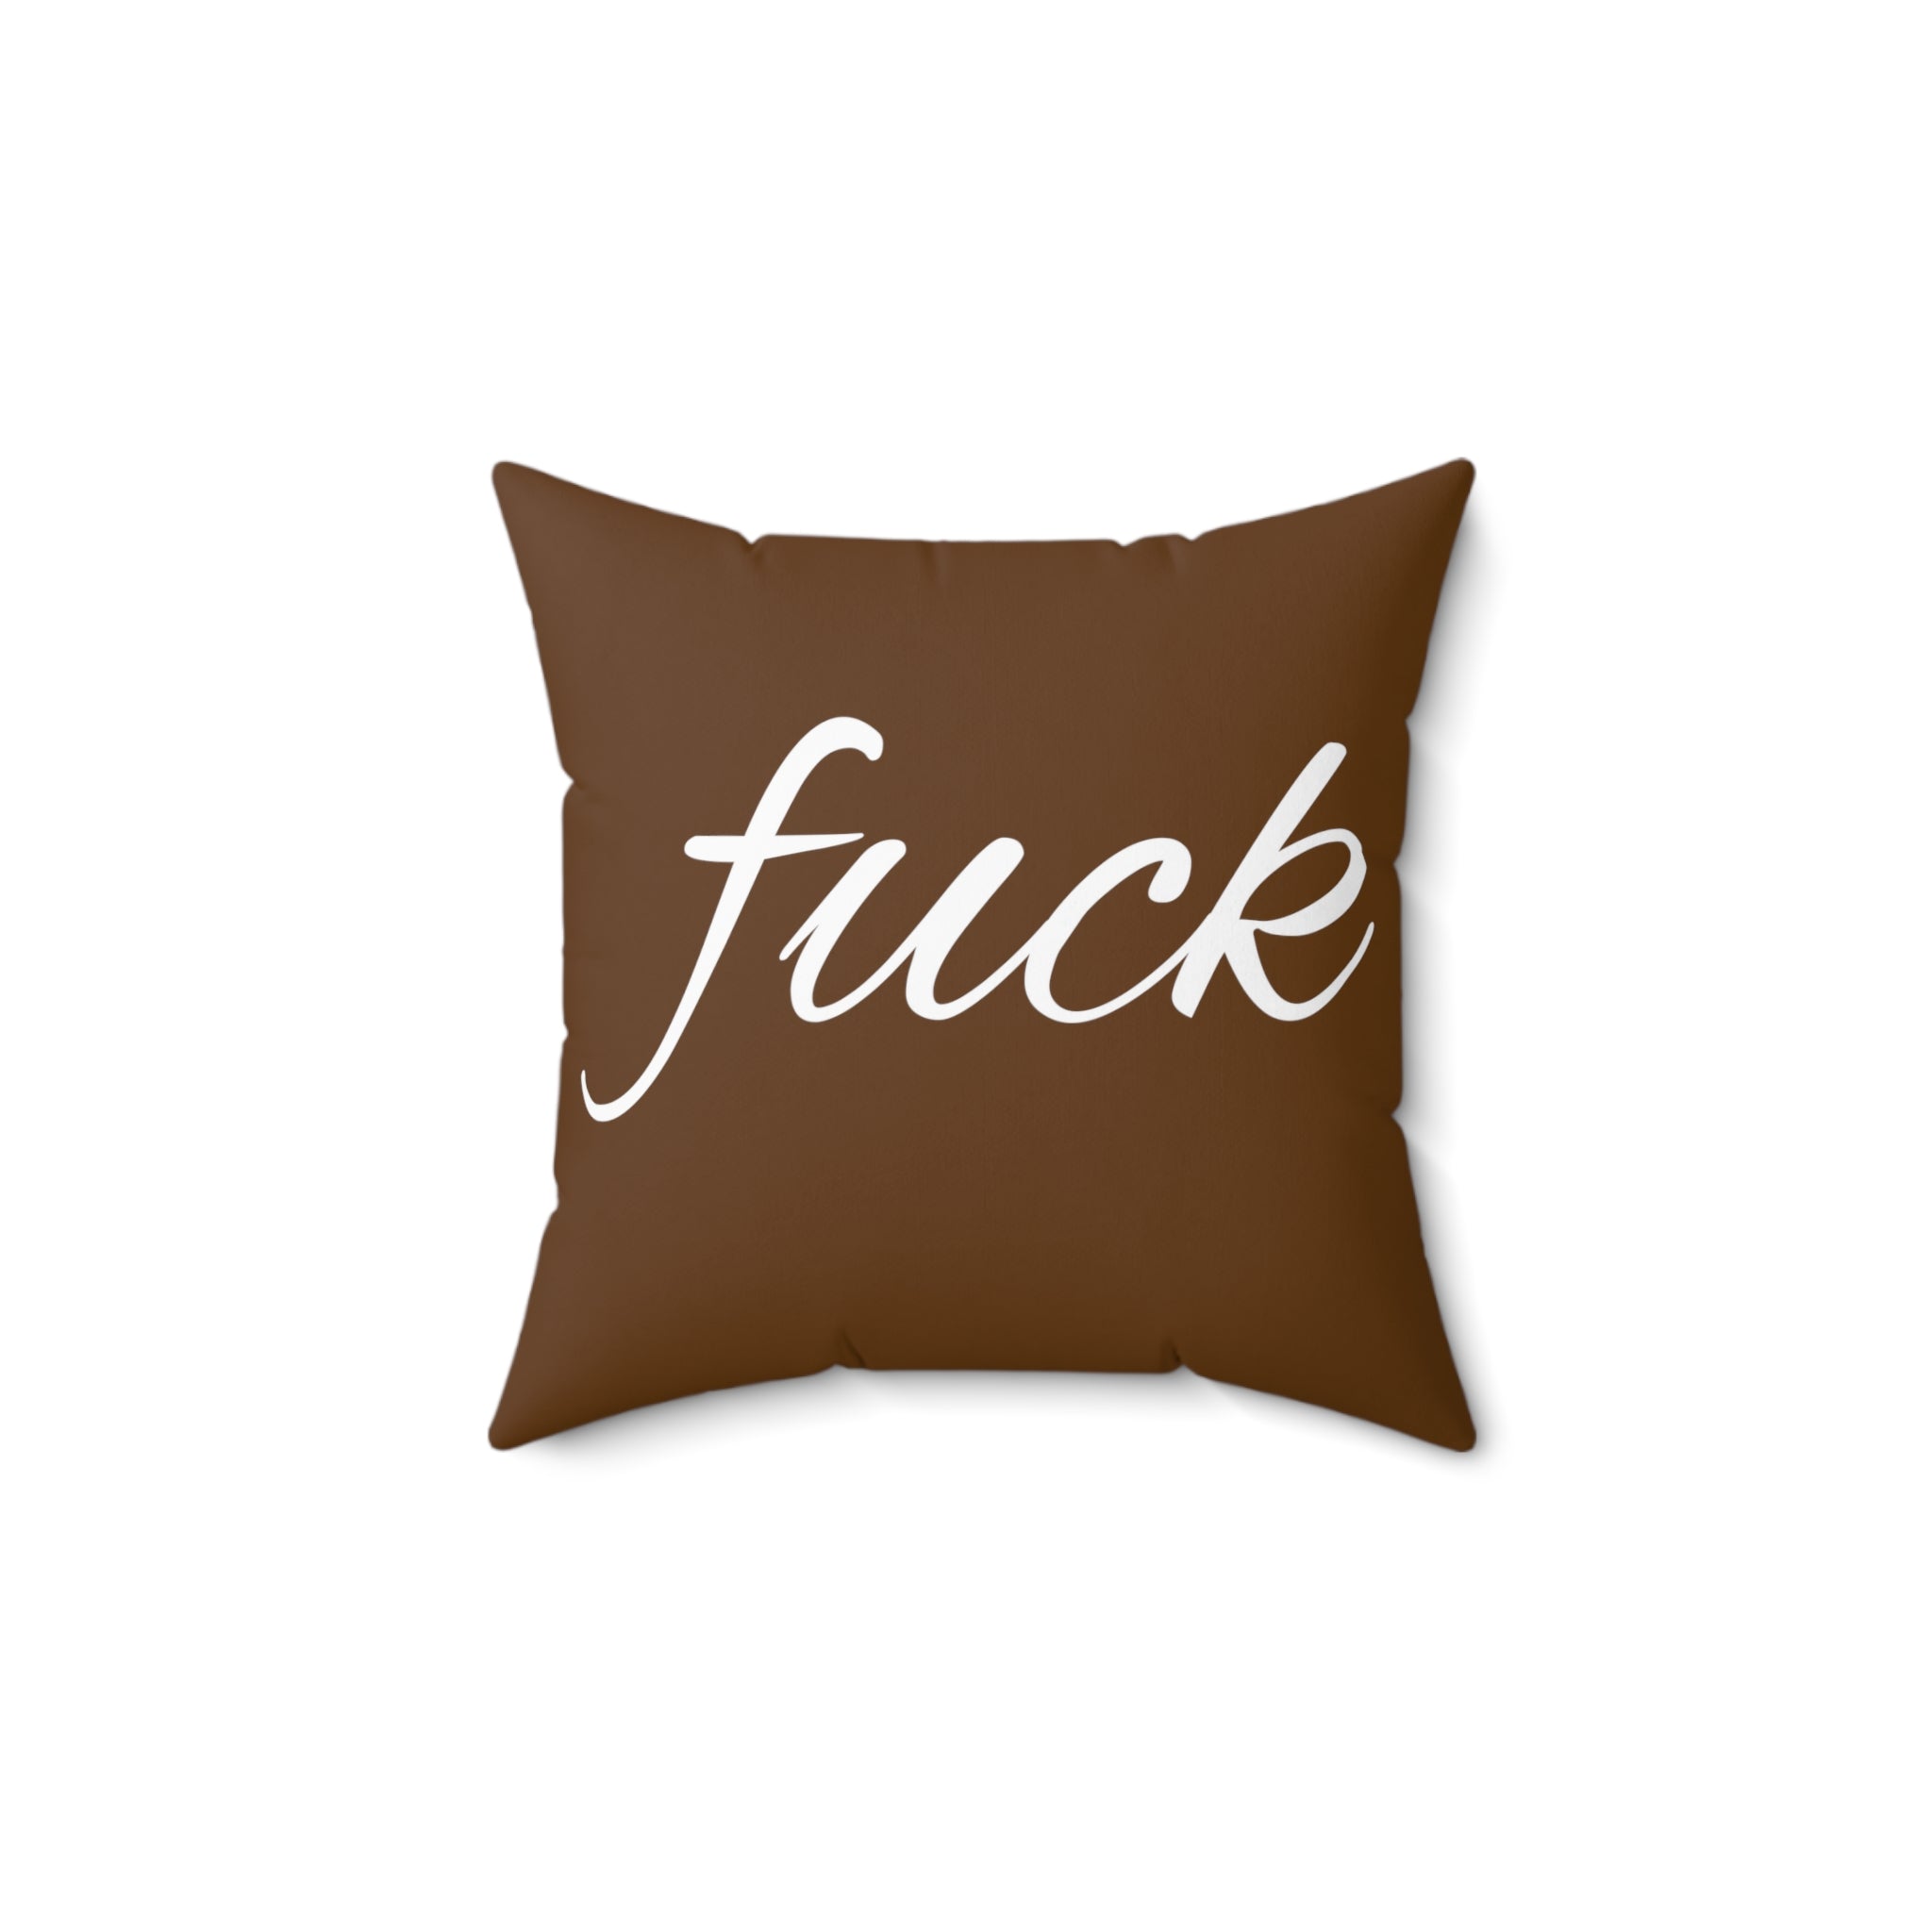  FUCK (Brown) Spun Polyester Square Pillow, Graphic Pillow, Home Decor Home Decor